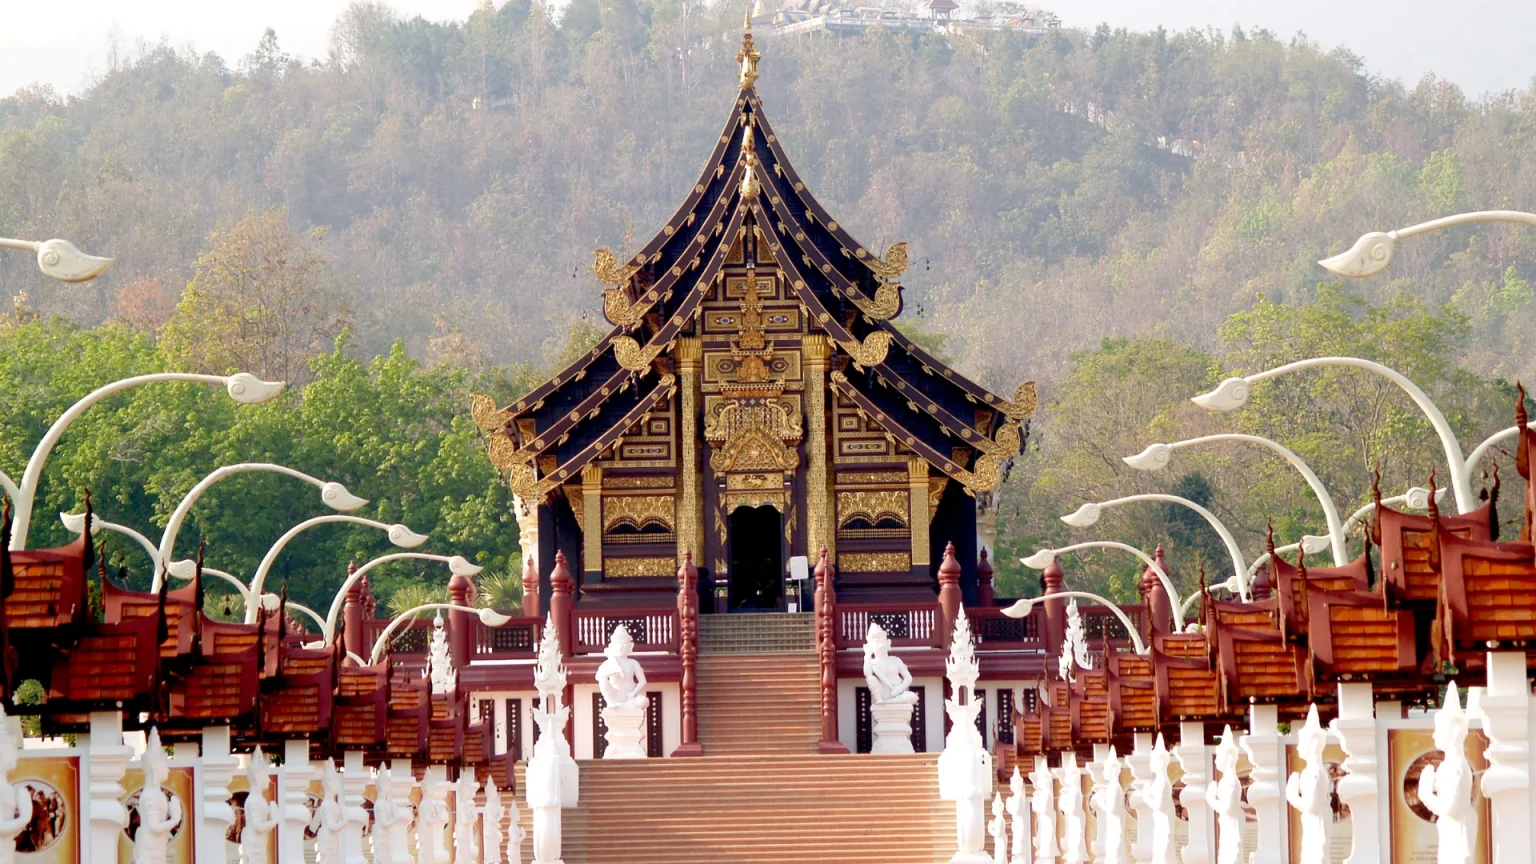 Cosa vedere in Thailandia: il tempio di Chiang mai